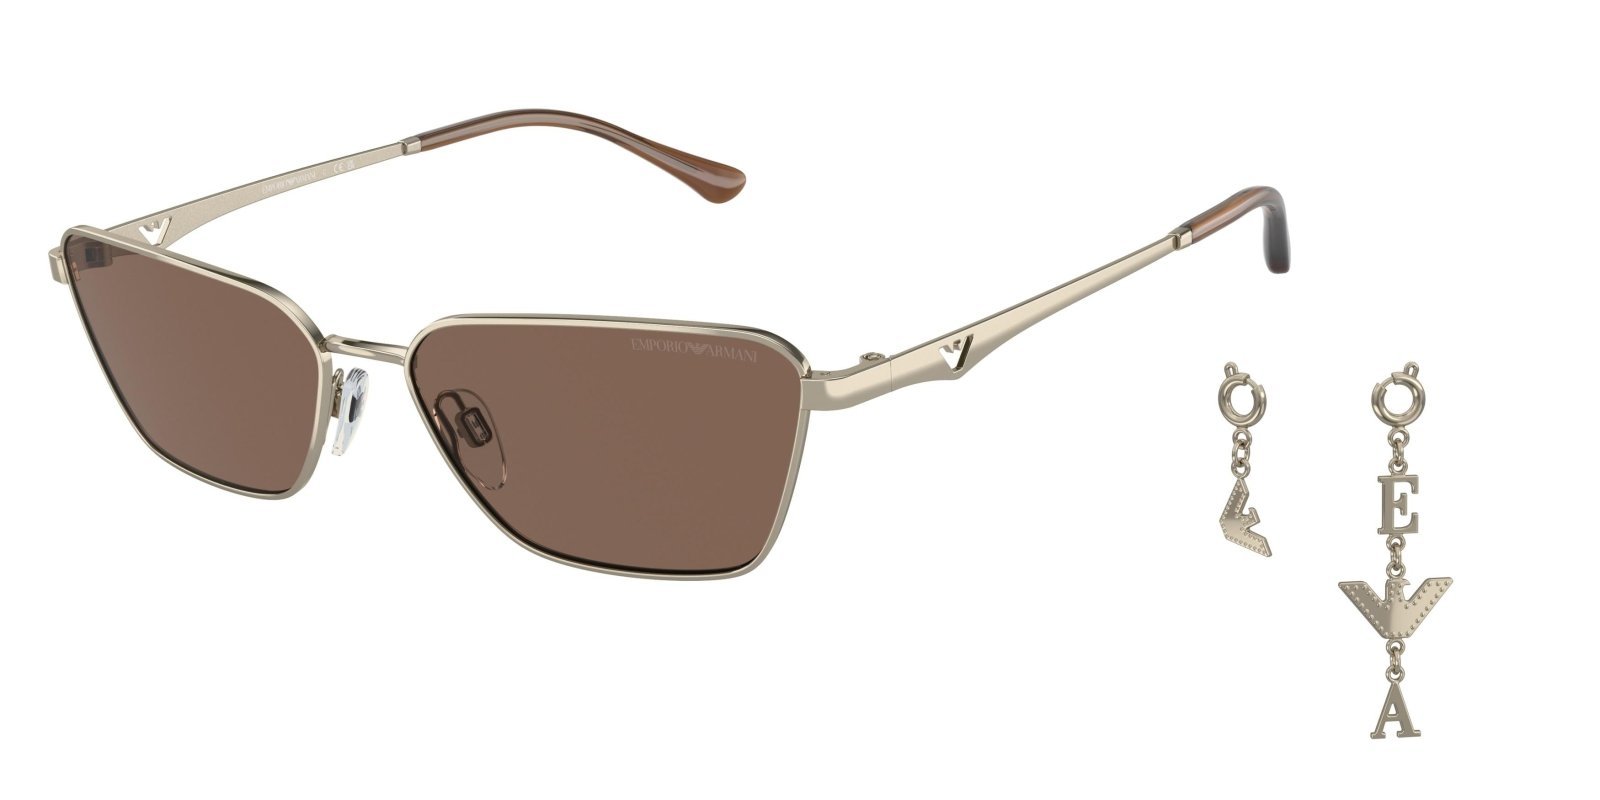  Emporio Armani 2141 Sunglasses 